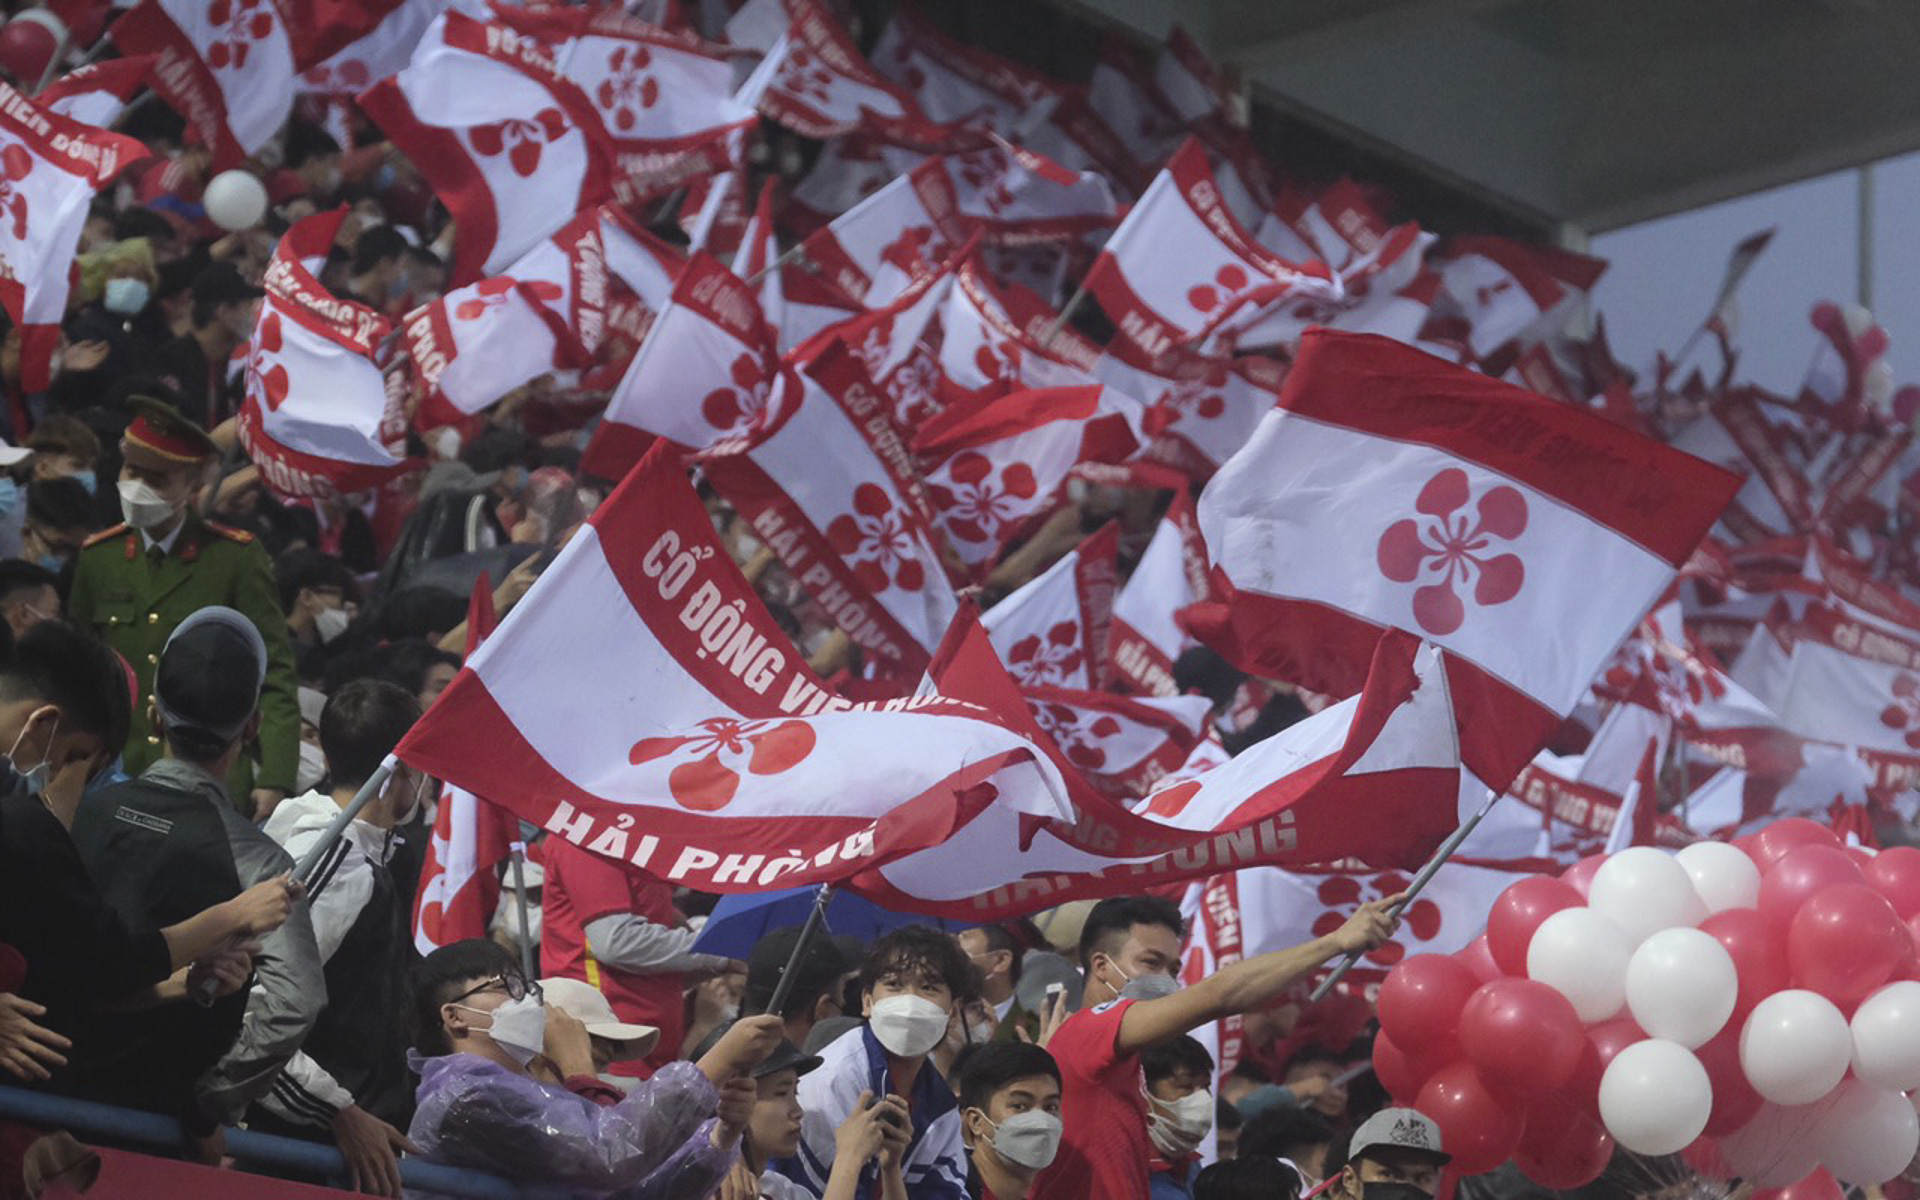 CLB Hải Phòng đề nghị được hát Quốc ca sau khi V.League đổi cách tổ chức